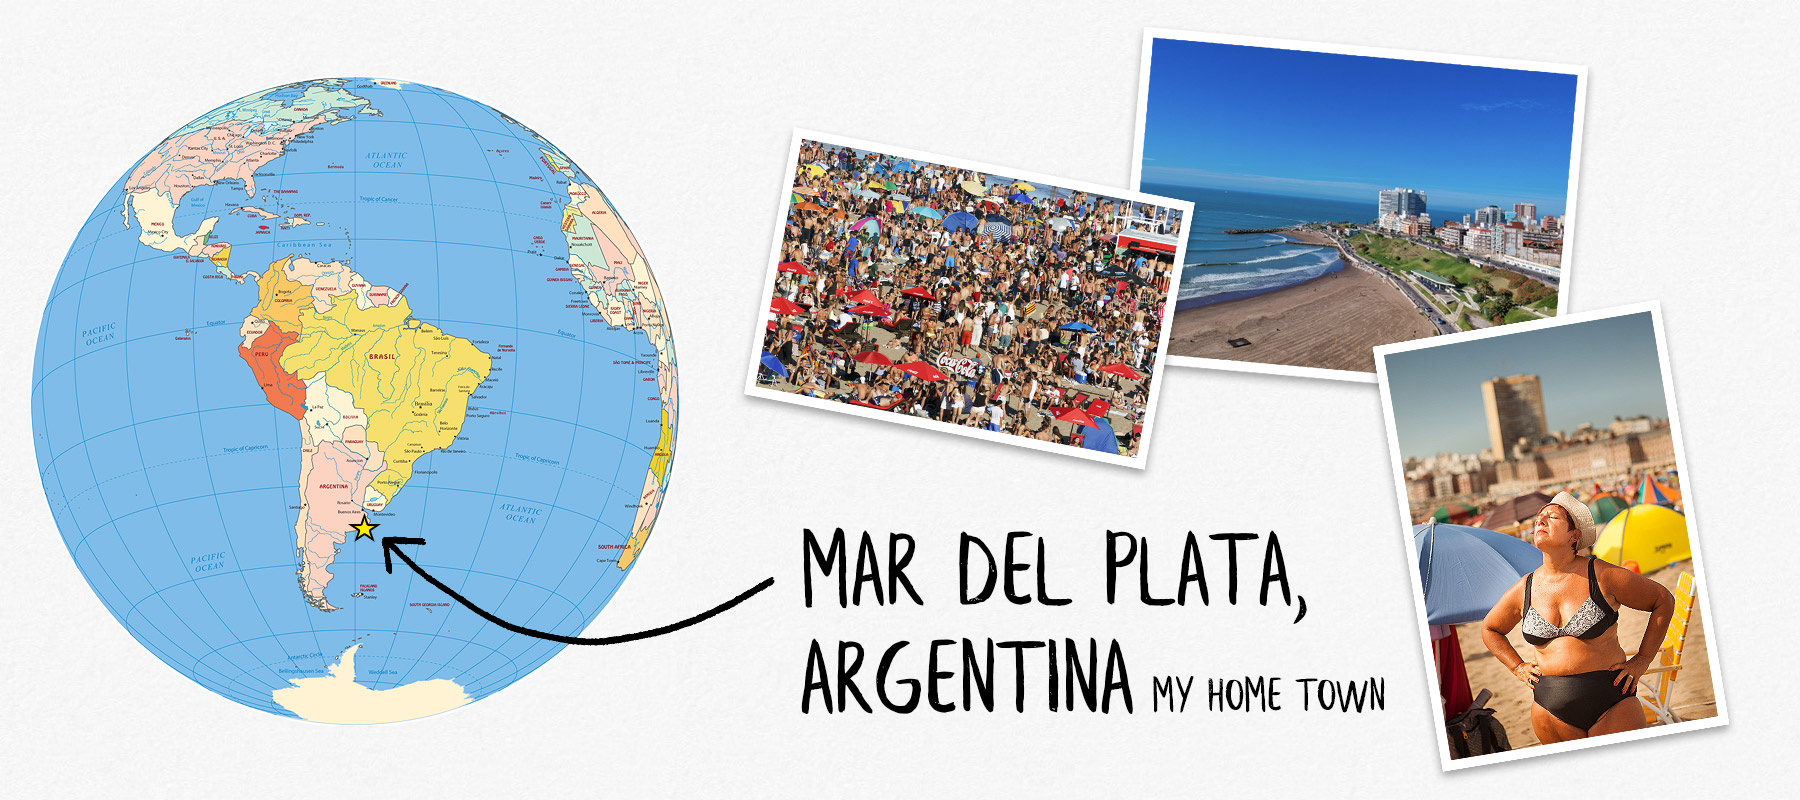 Mar del Plata, Argentina - My home town